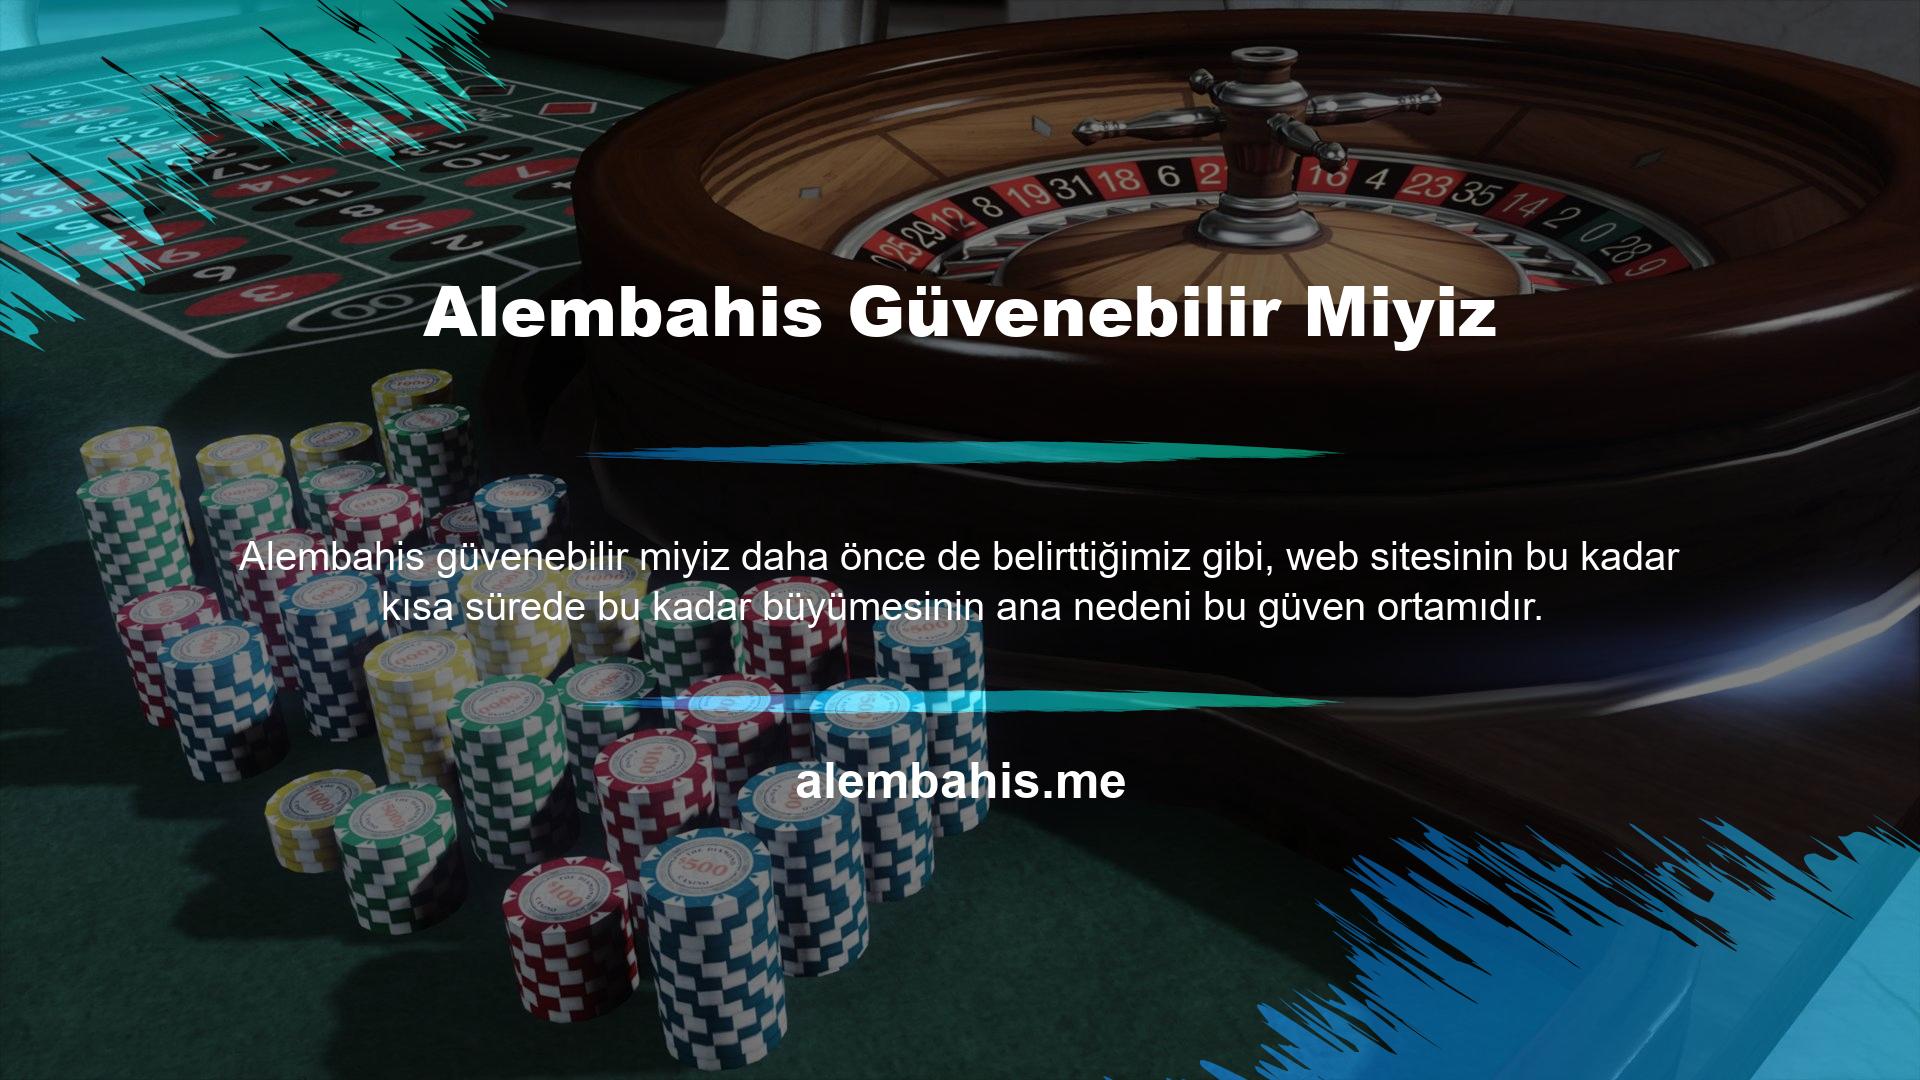 Alembahis Casino, kalite ilkeleri arasında güvenirliği ön planda tutar ve bu aşamada taviz vermez